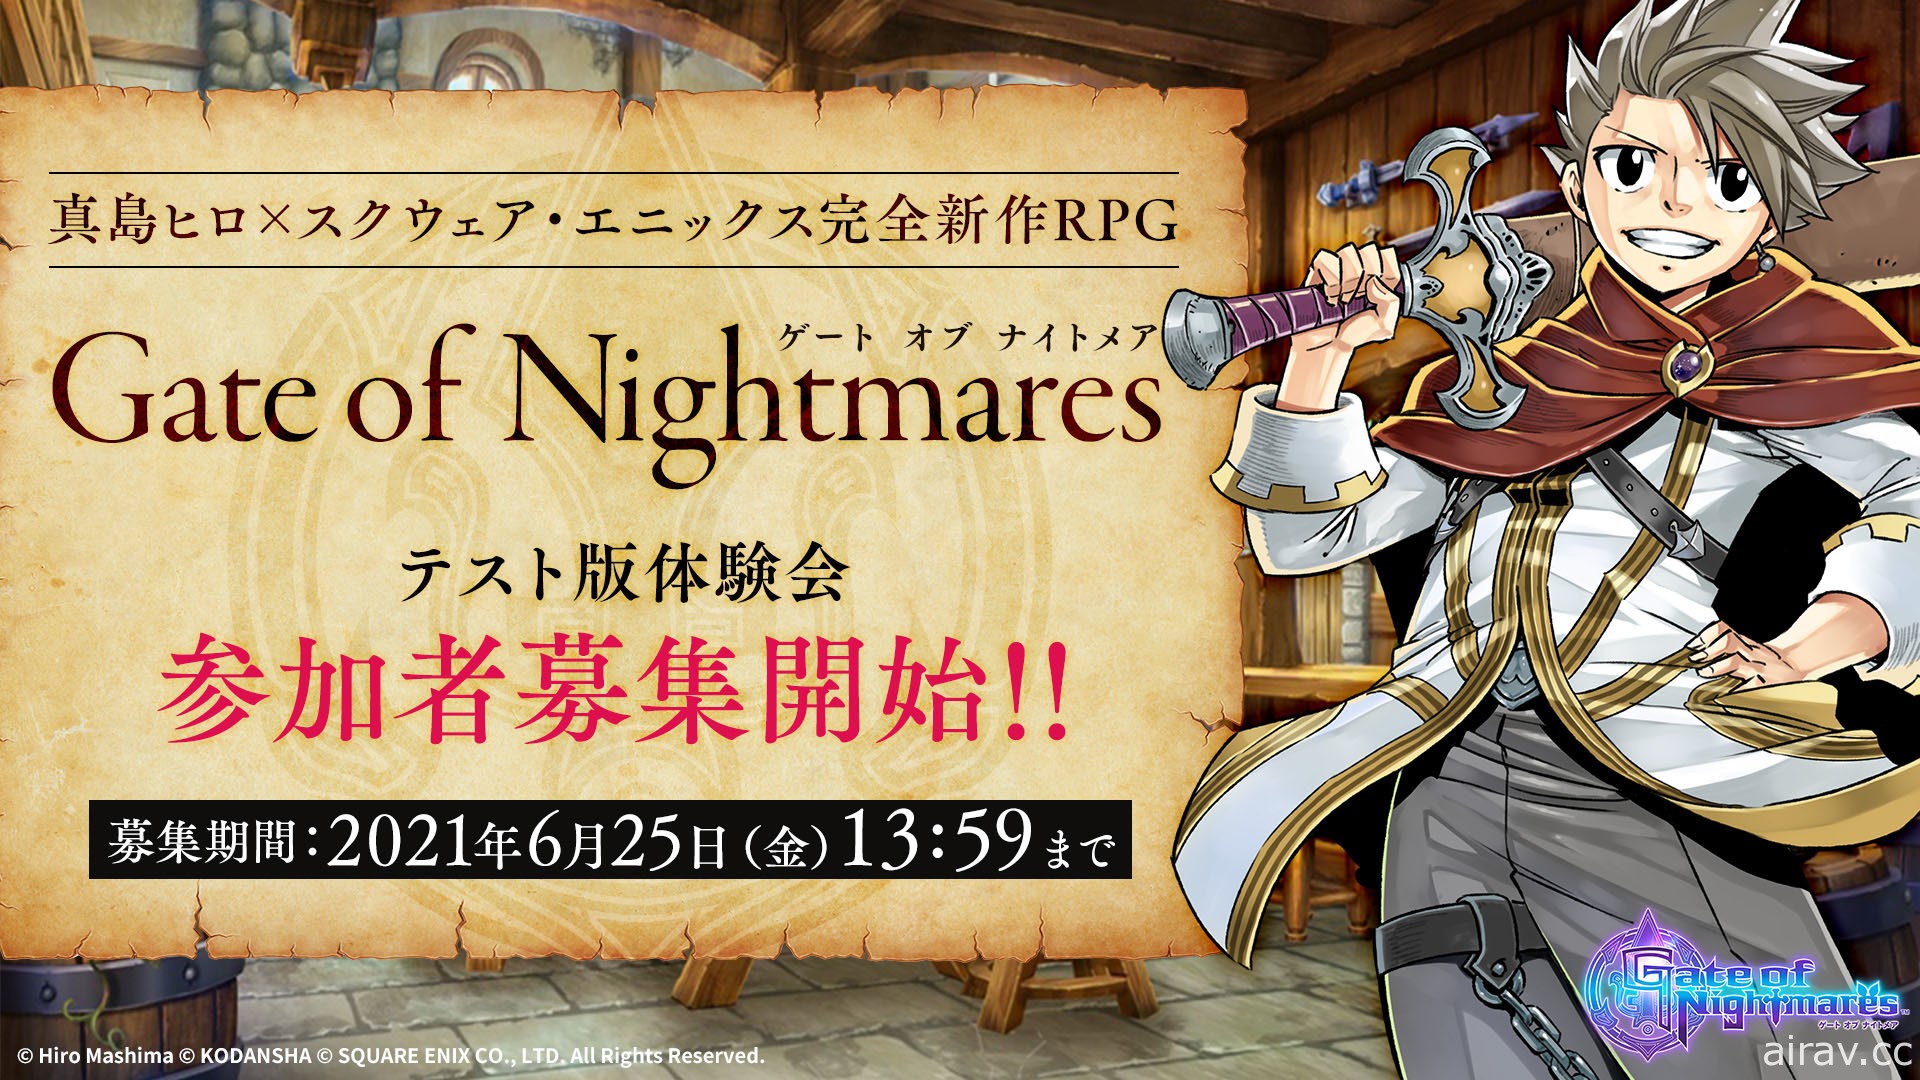 奇幻 RPG《梦魇之门》预计 7 月 1 日于日本展开测试 即日起开放报名